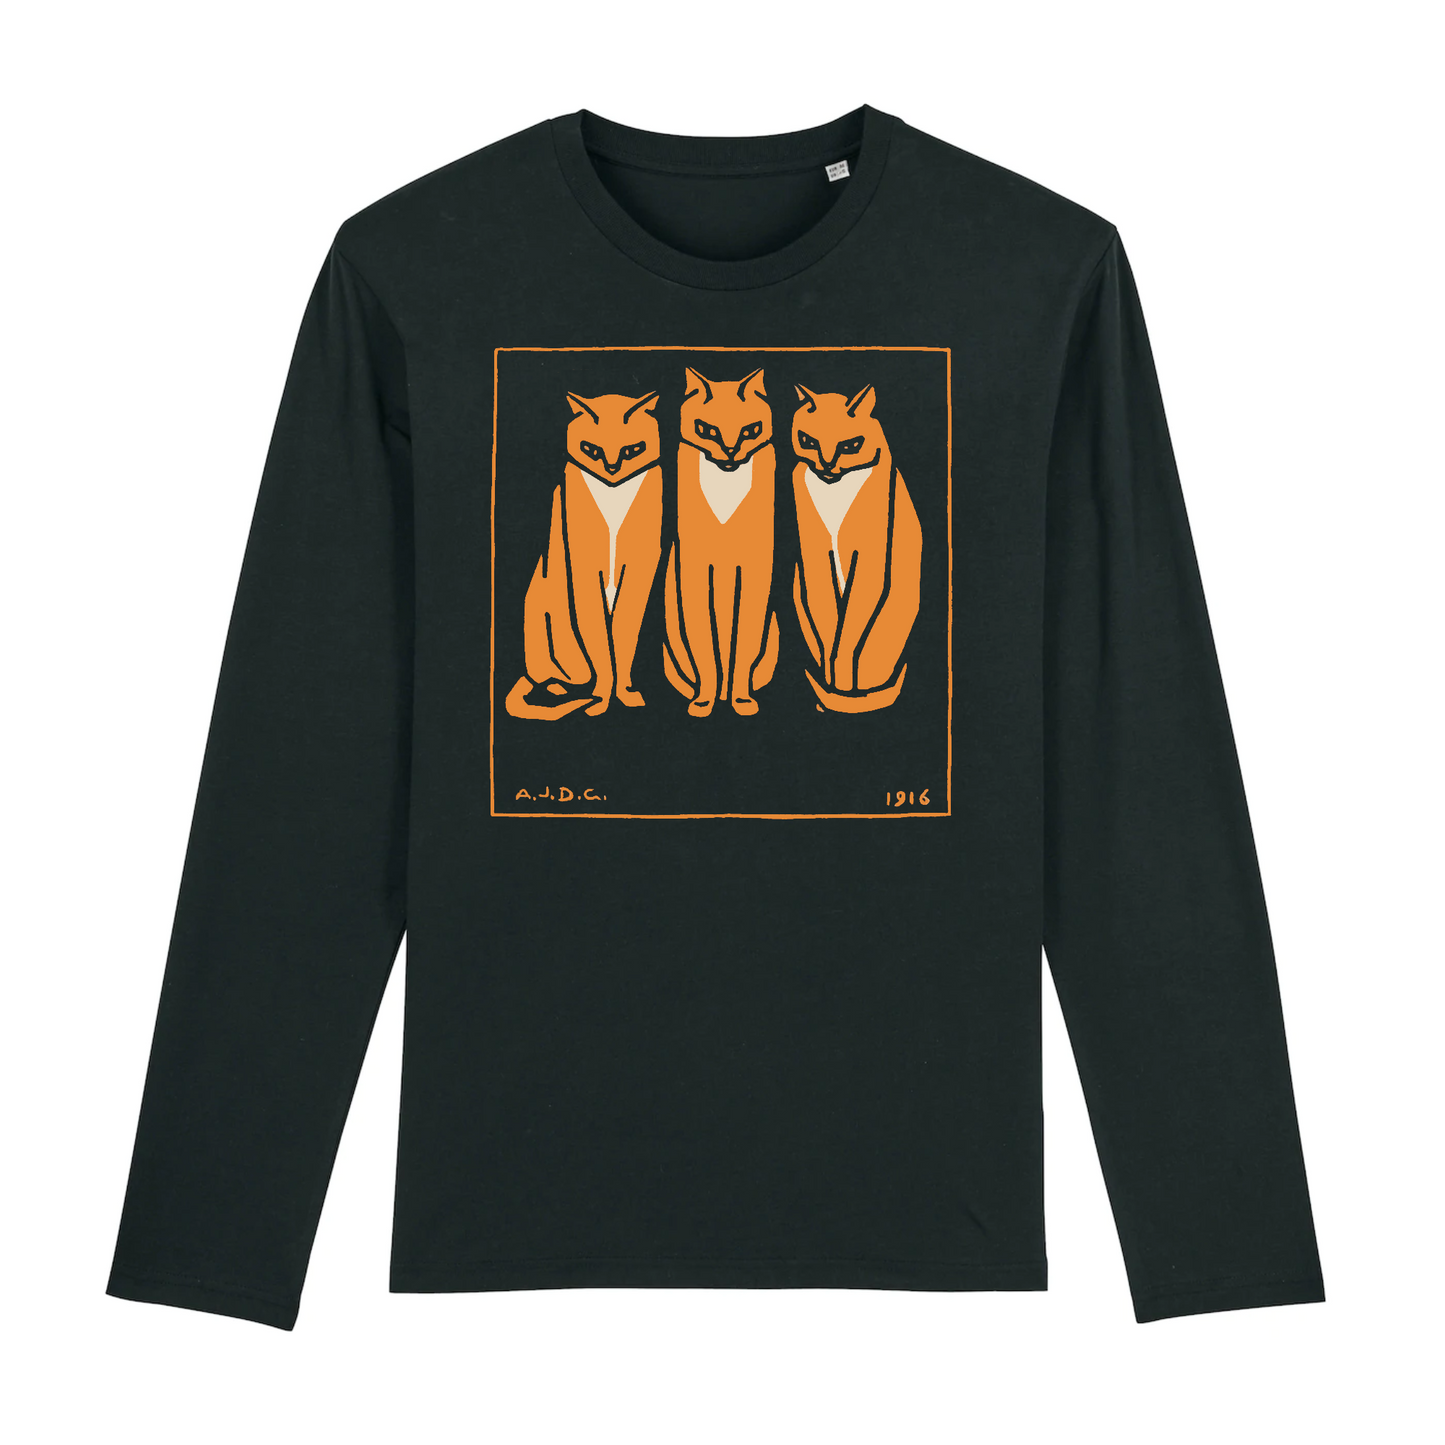 Three Cats by Julie de Graag, 1915 - Organic Cotton Long-Sleeve T-Shirt